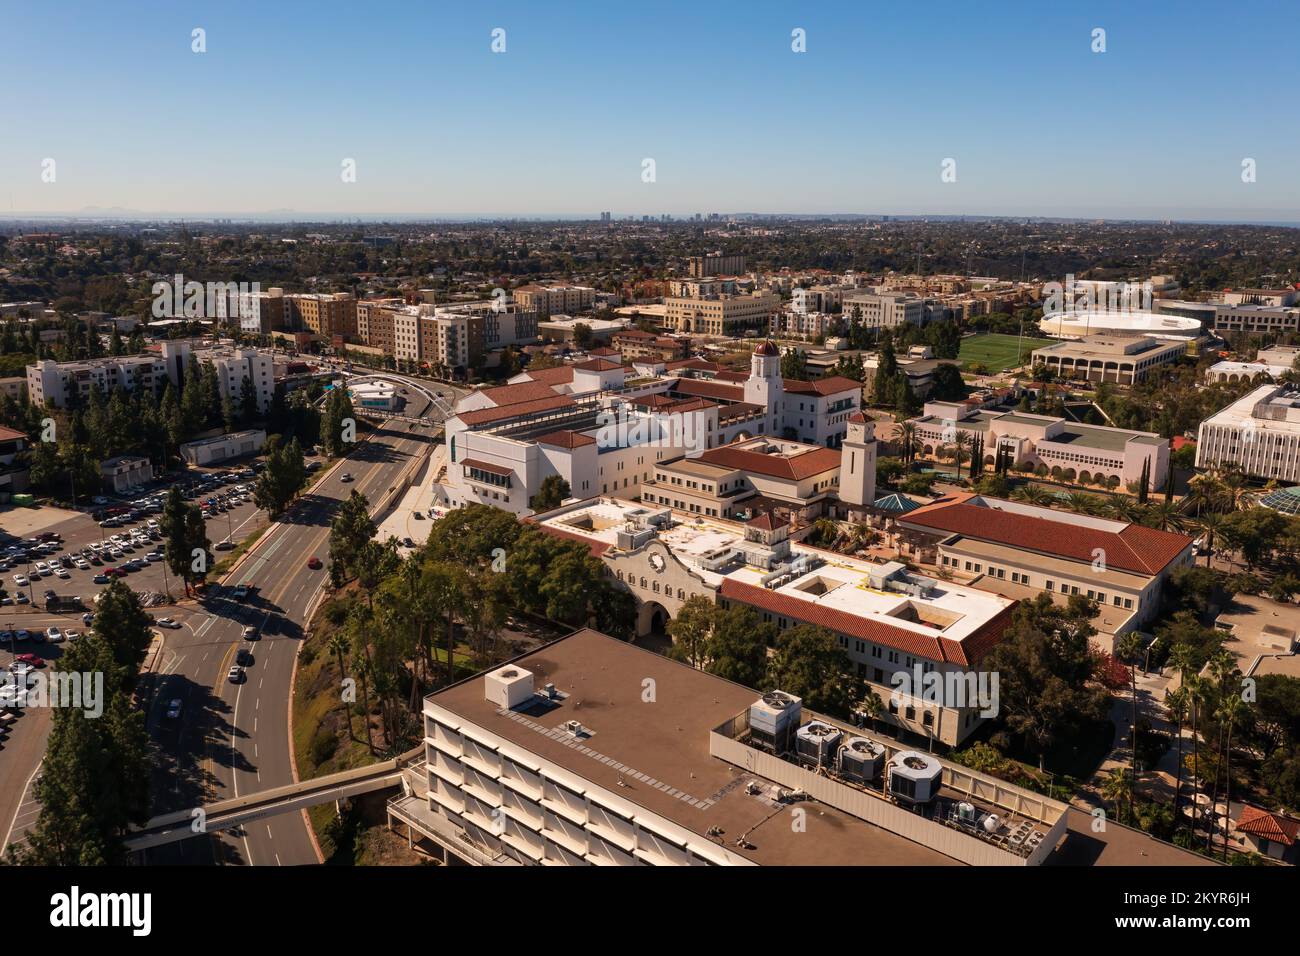 Campus universitaire de l'Université d'État de San Diego, tourné avec un drone Banque D'Images